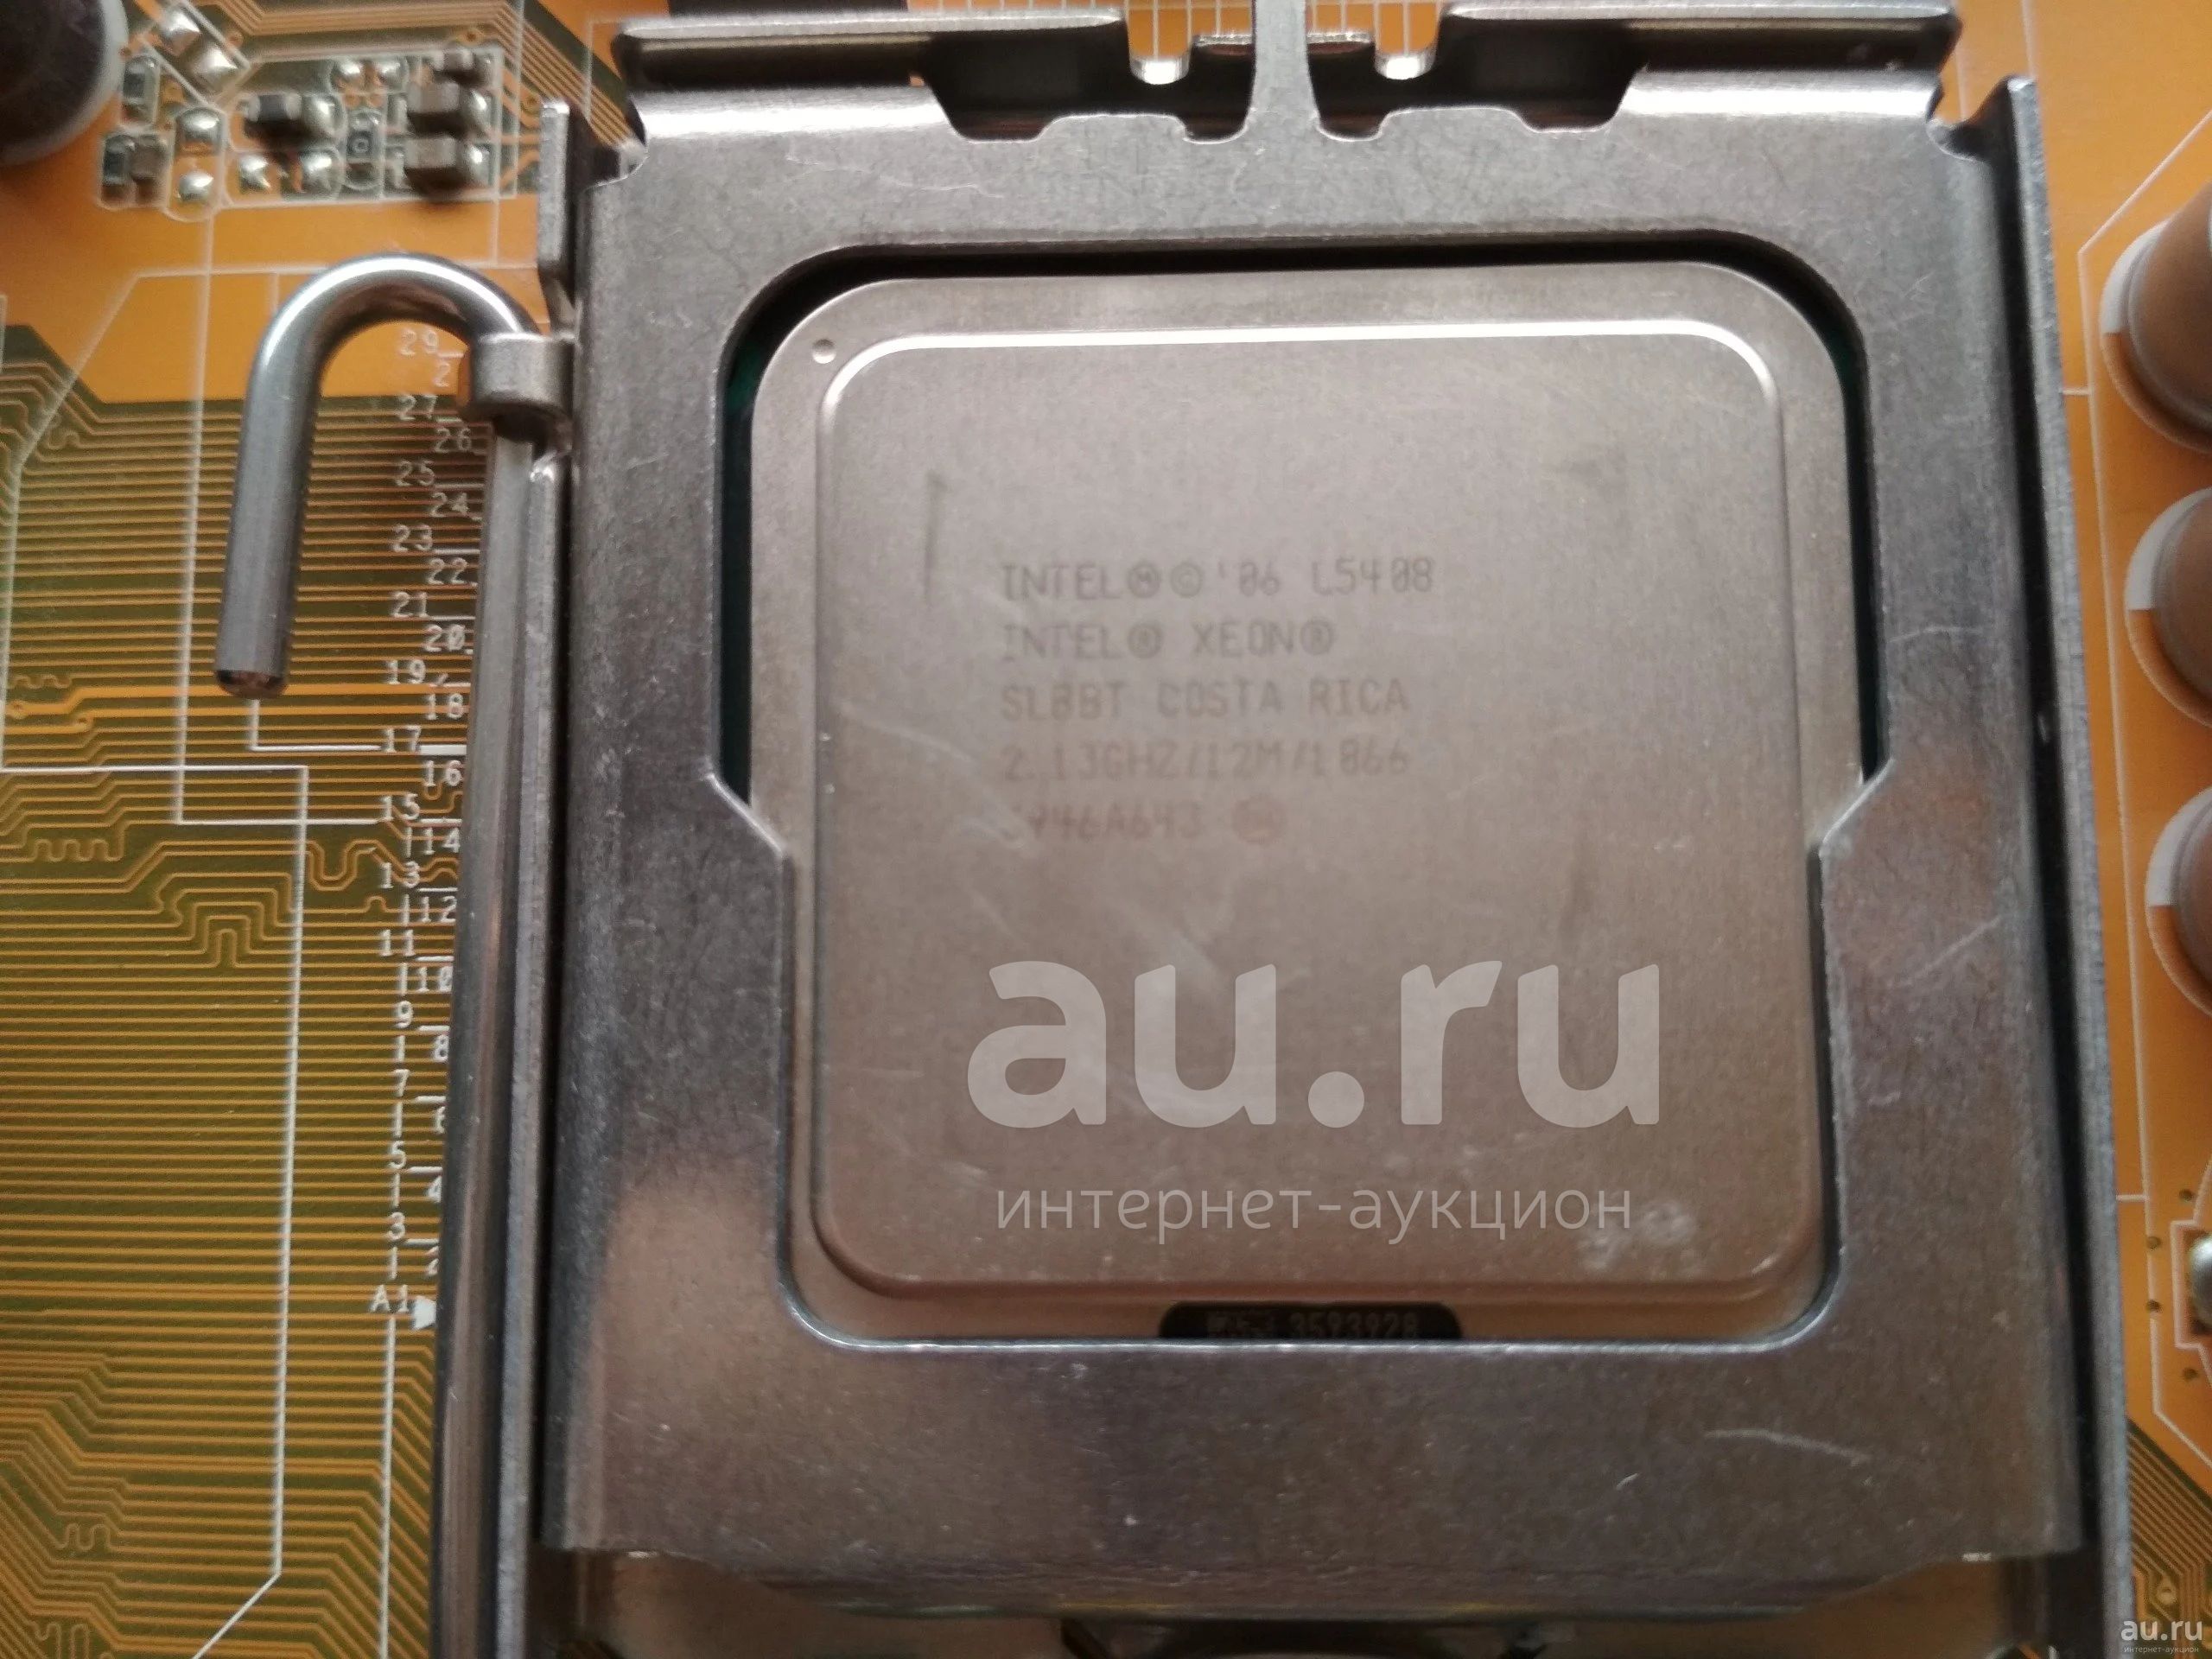 Процессор Intel Xeon L5408 4core/ 2.13GHz/ 12M/ 1066MHz/ LGA775 — купить в  Красноярске. Состояние: Б/у. Процессоры на интернет-аукционе Au.ru